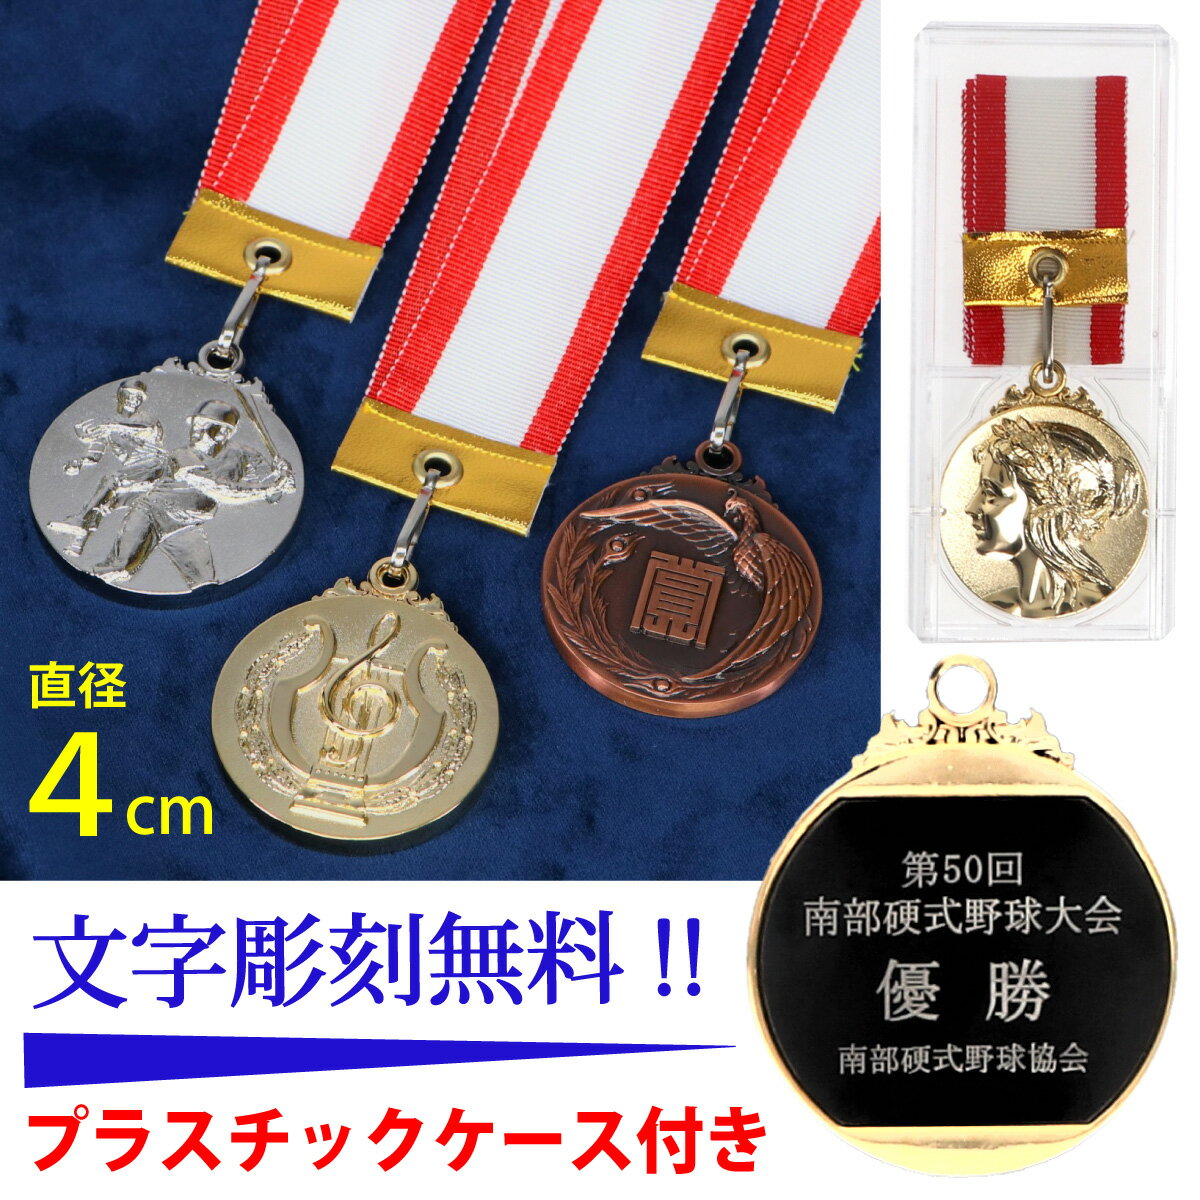 メダル (4cm)金・銀・銅 MM4-5-6 -A27【文字彫刻無料】 優勝メダル 記念メダル 表彰メダル 金メダル 銀メダル 銅メダ…